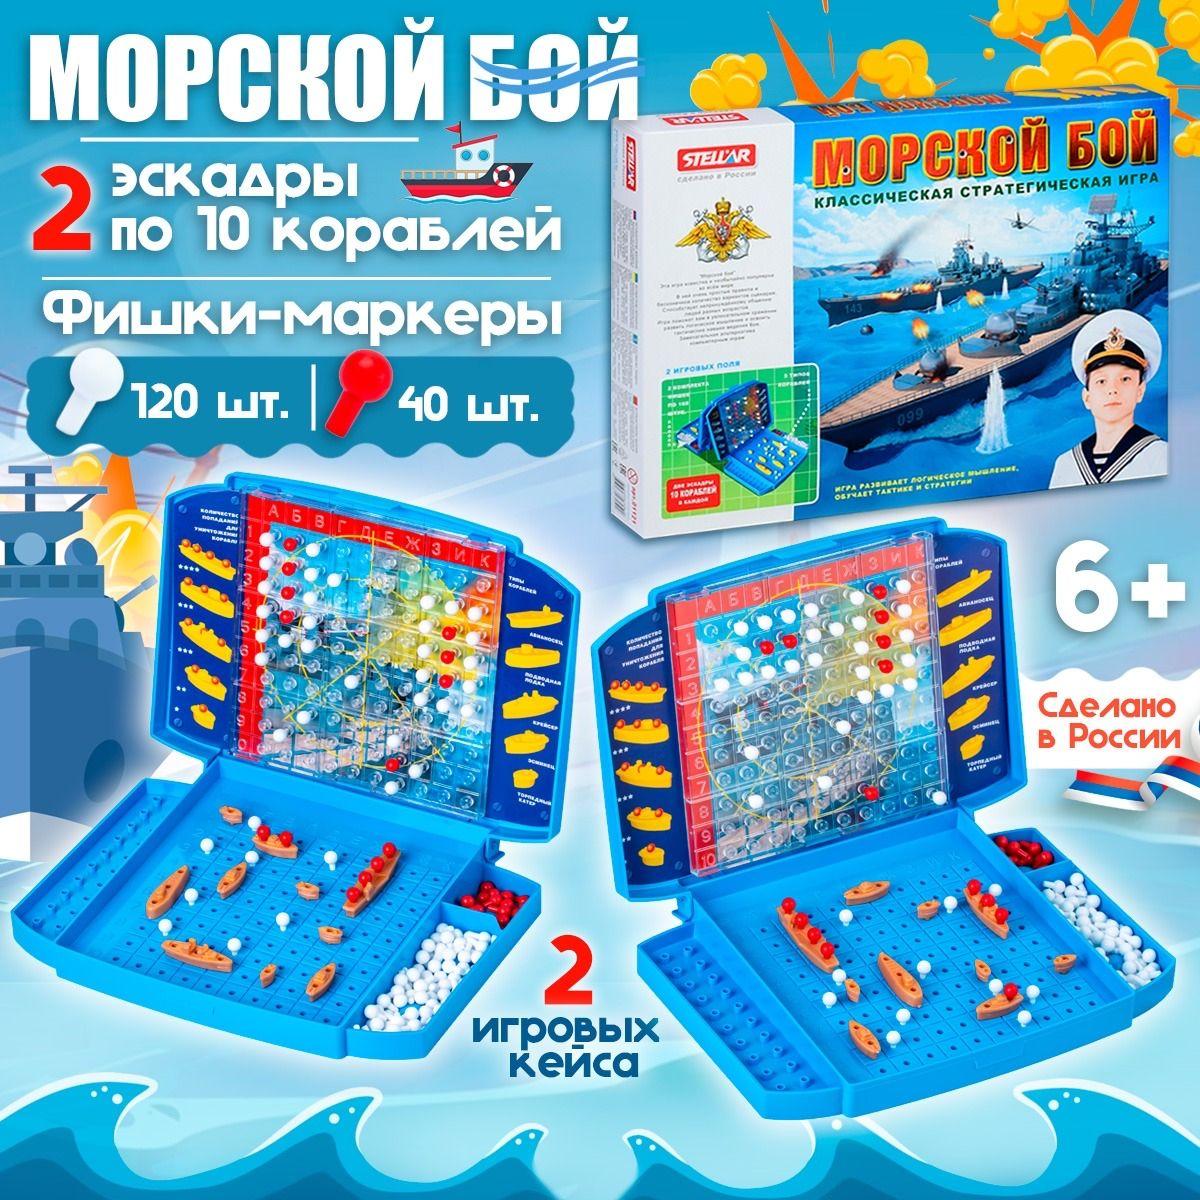 Stellar | Настольная игра для детей "Морской бой" с увеличенным игровым полем в подарочной коробке, Стеллар (Россия)